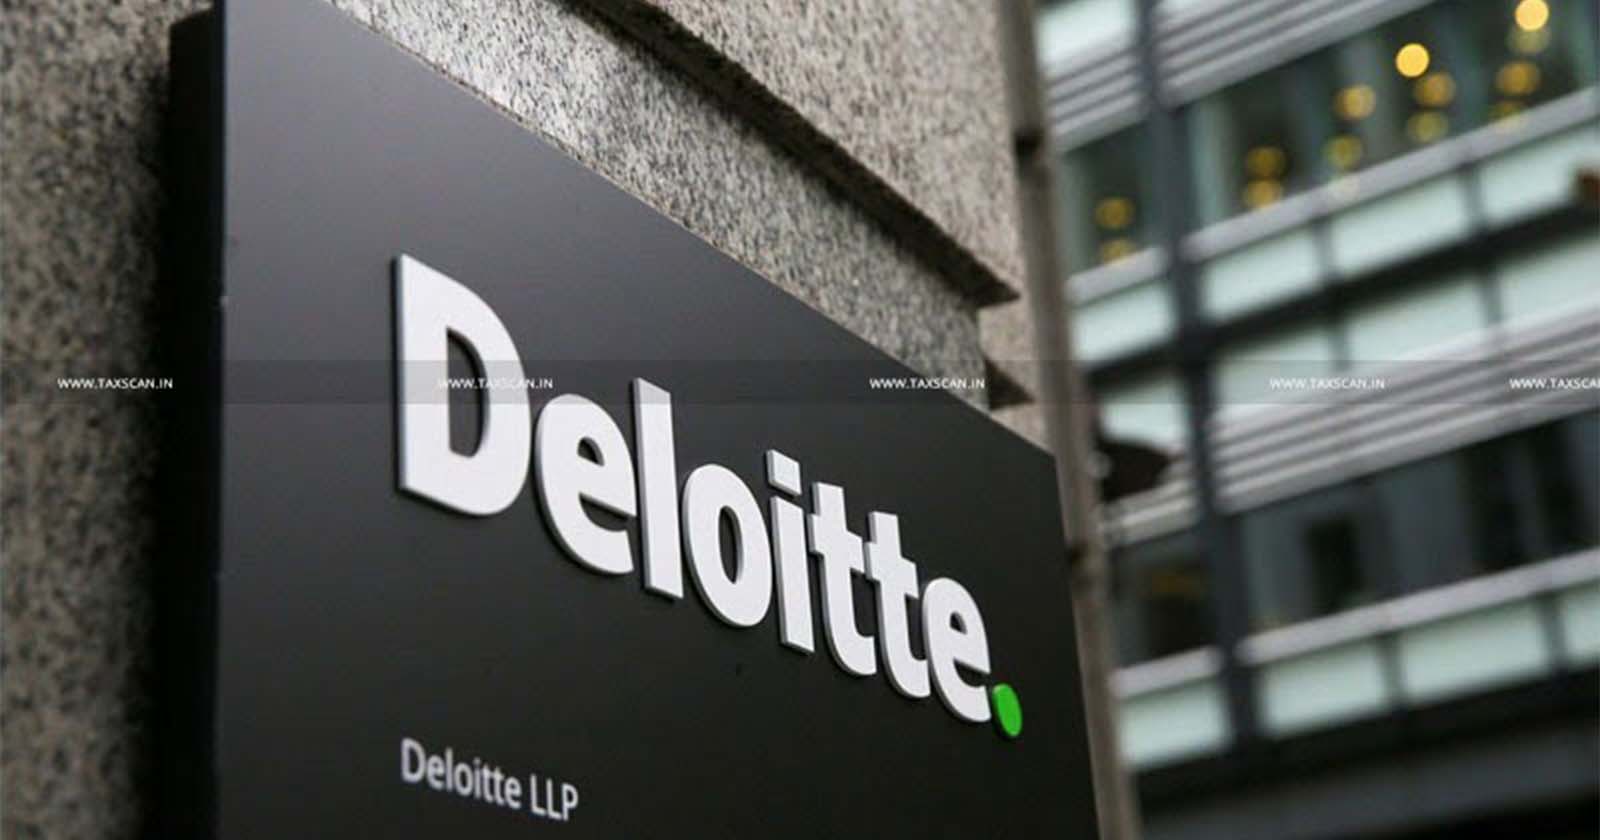 CA Vacancy In Deloitte - MBA Vacancy In Deloitte - B.com Vacancy in Deloitte - Chartered Accountant Vacancy In Deloitte - Taxscan